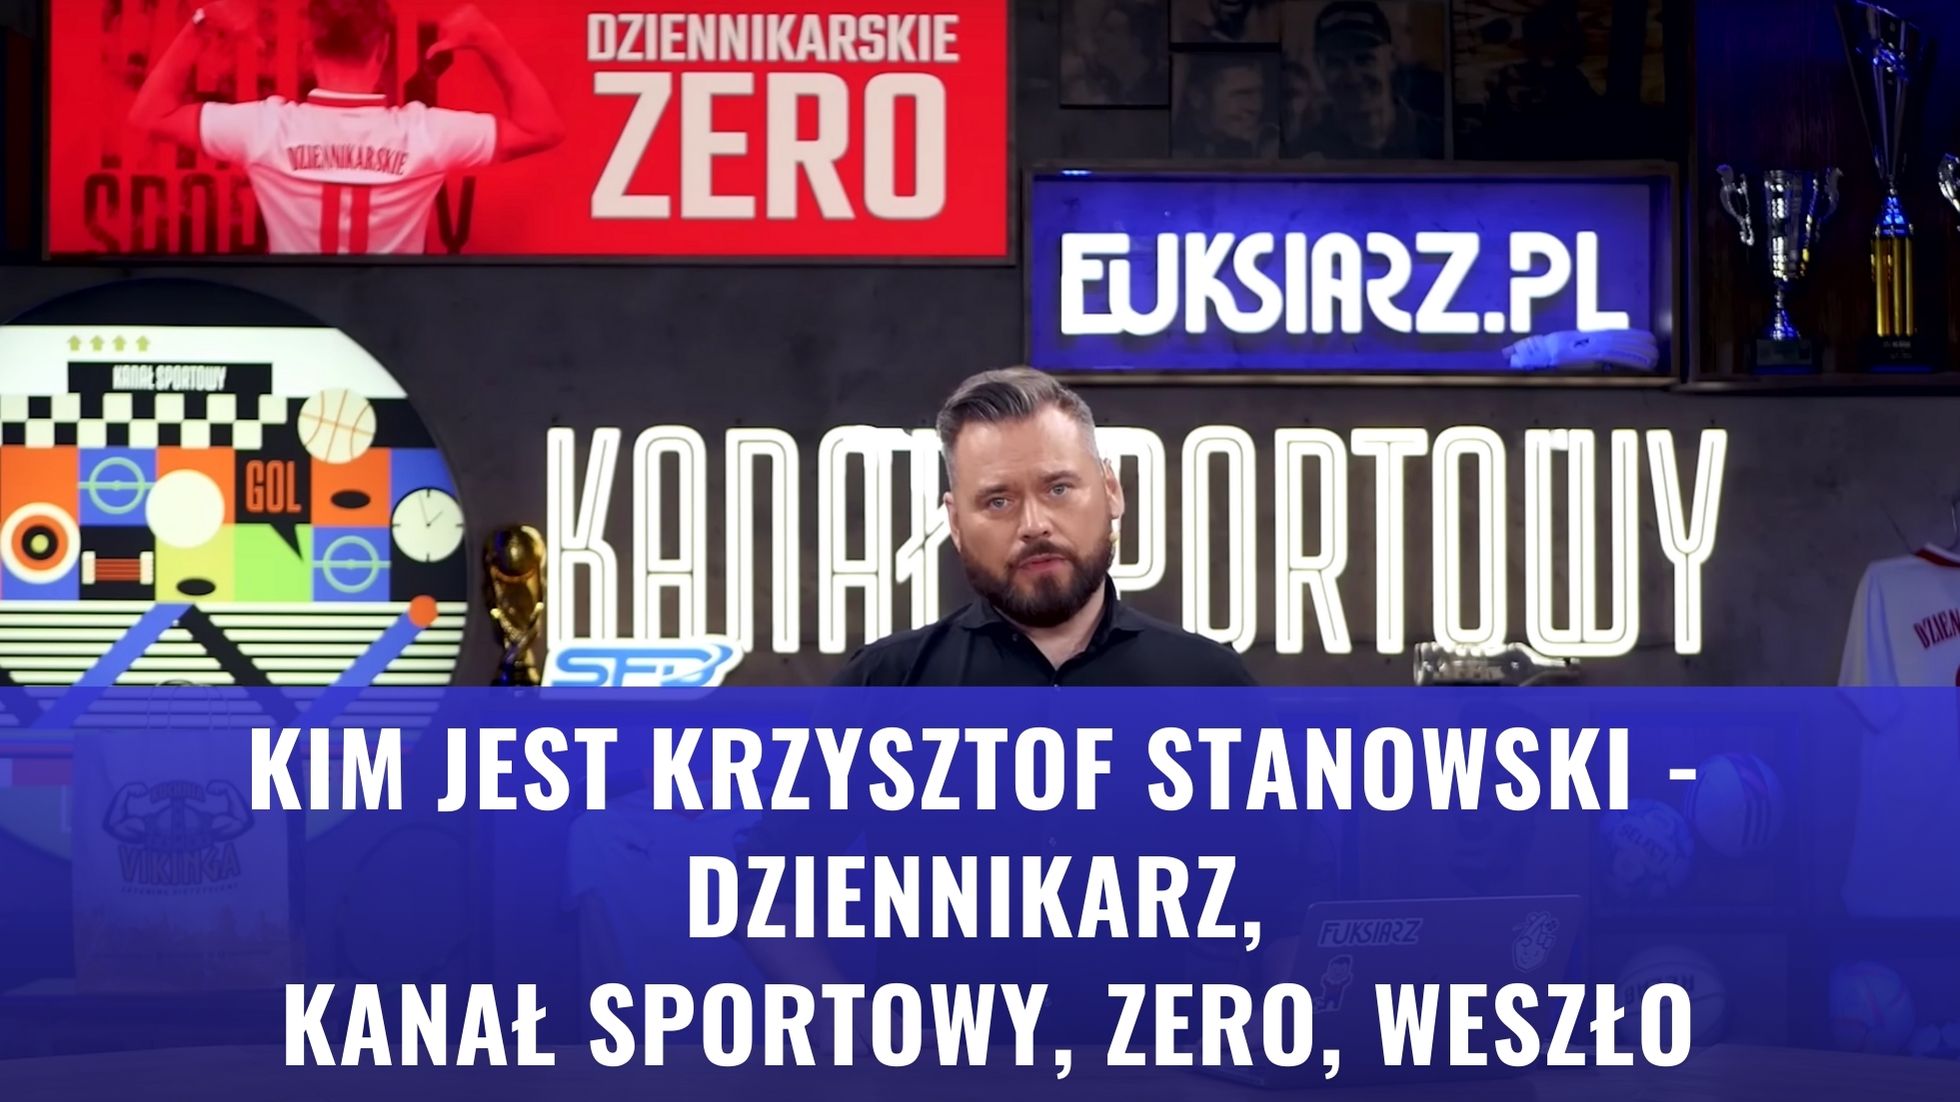 fot. screenshot YouTube / Kanał Sportowy